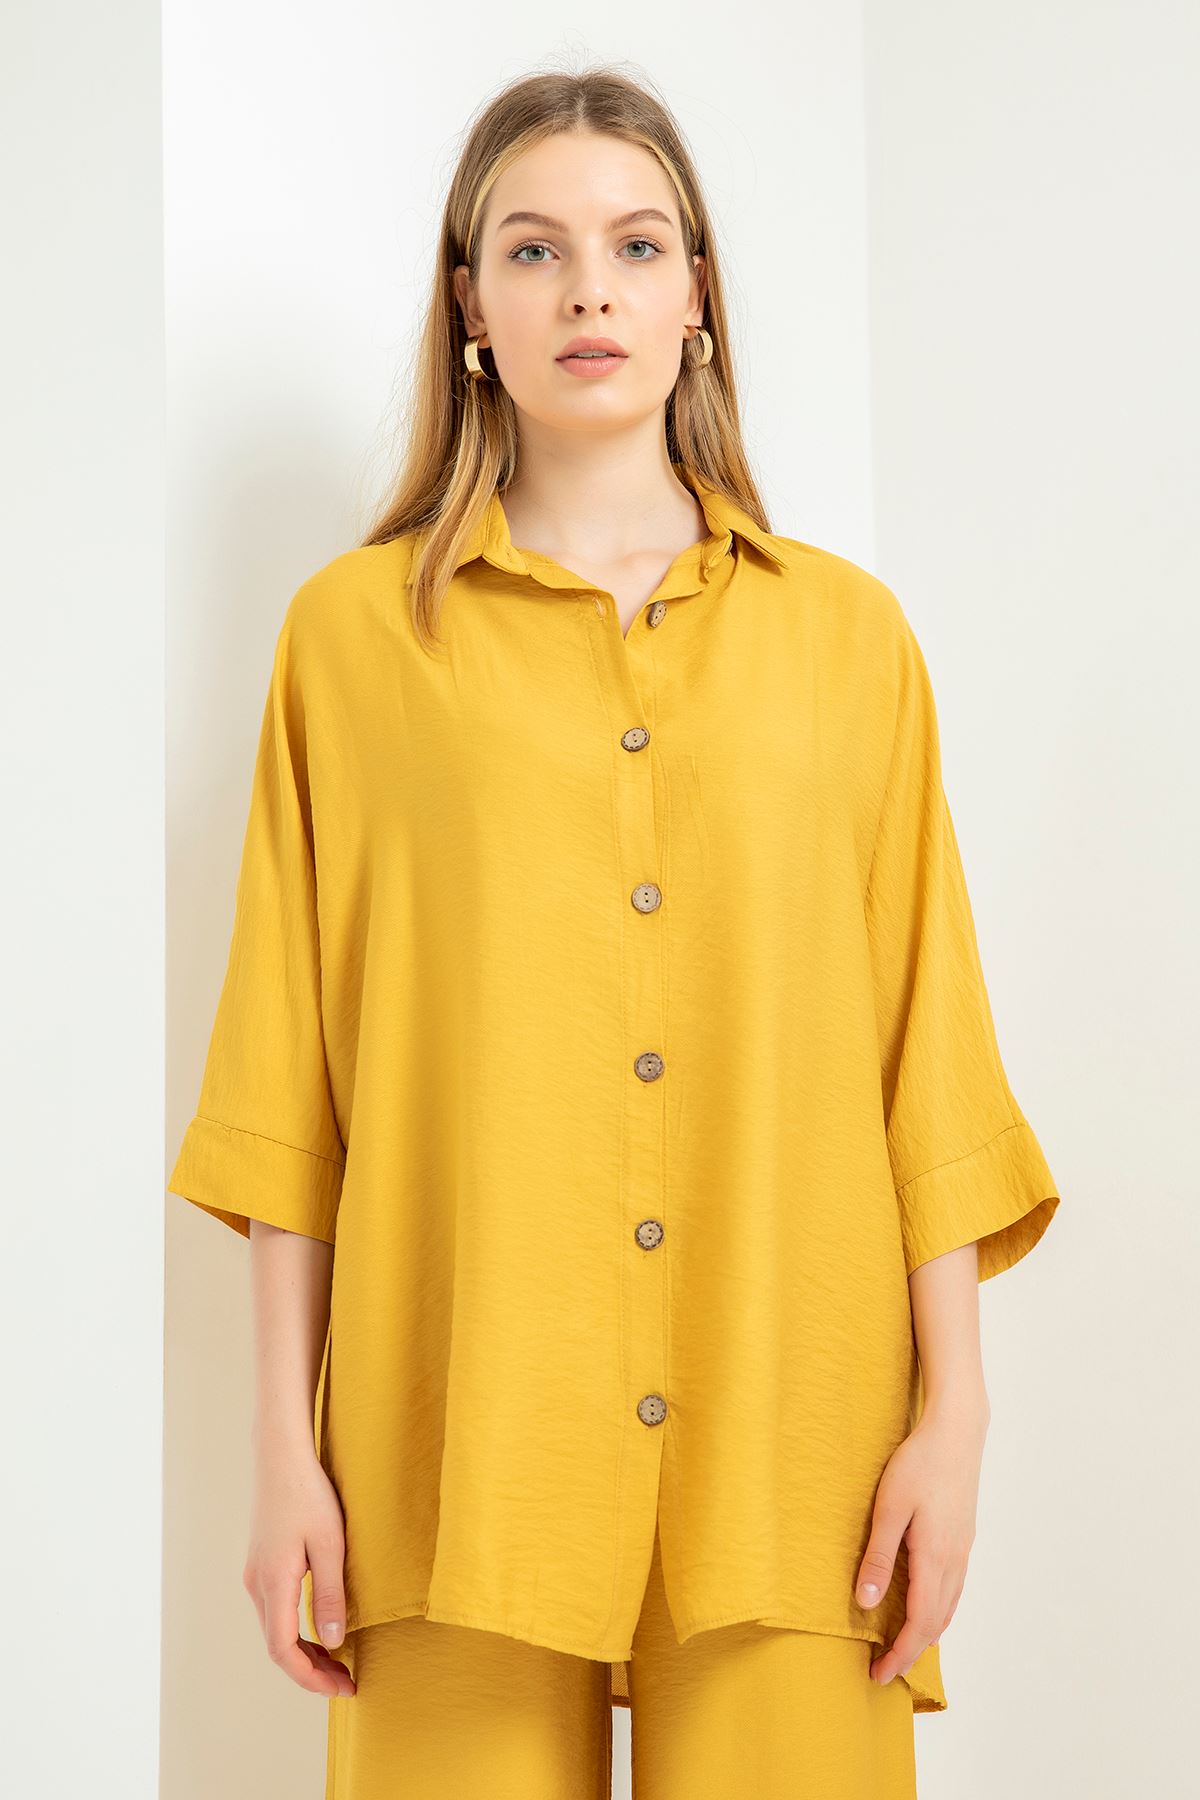 Aerobin Fabric Half Sleeve Shirt Below Hip Oversize Women'S Shirt - Mustard